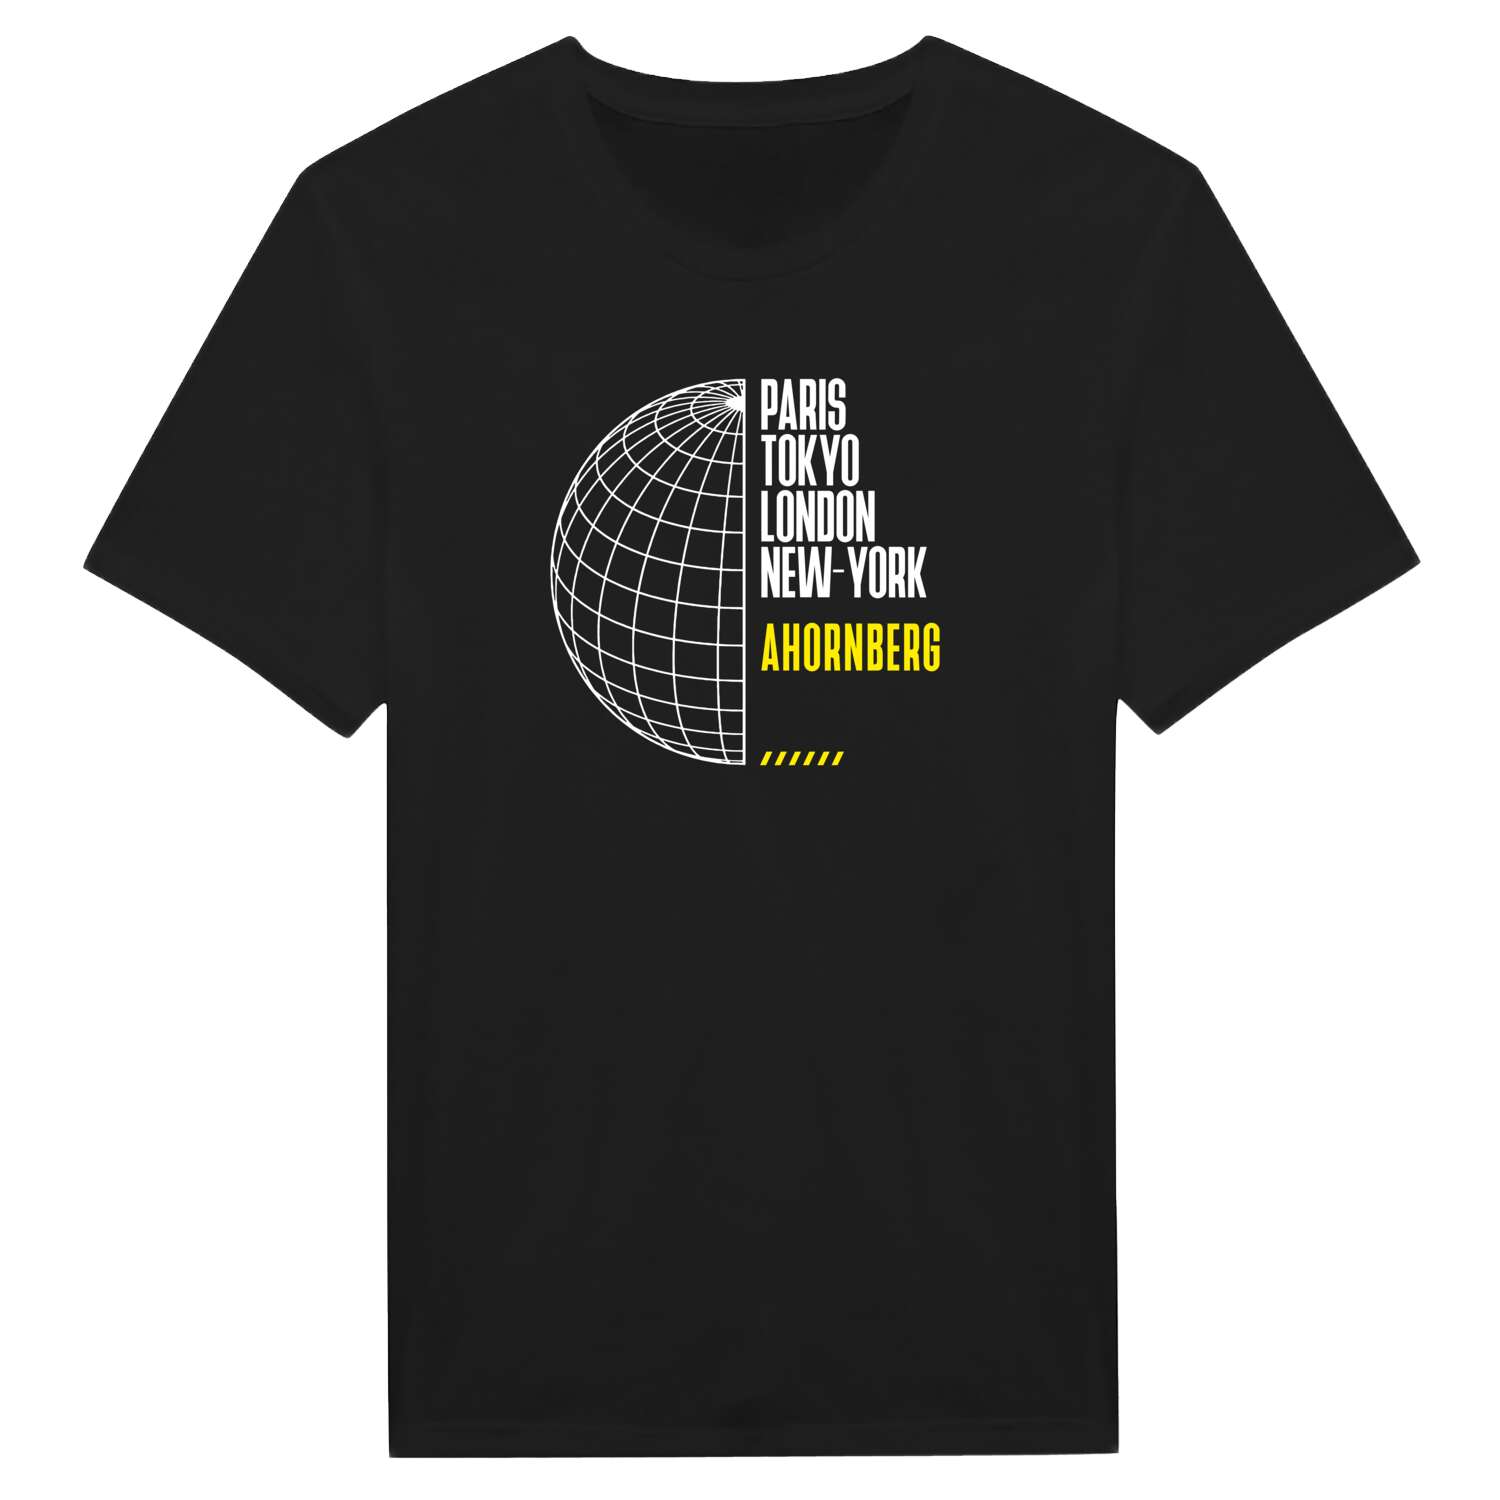 Ahornberg T-Shirt »Paris Tokyo London«